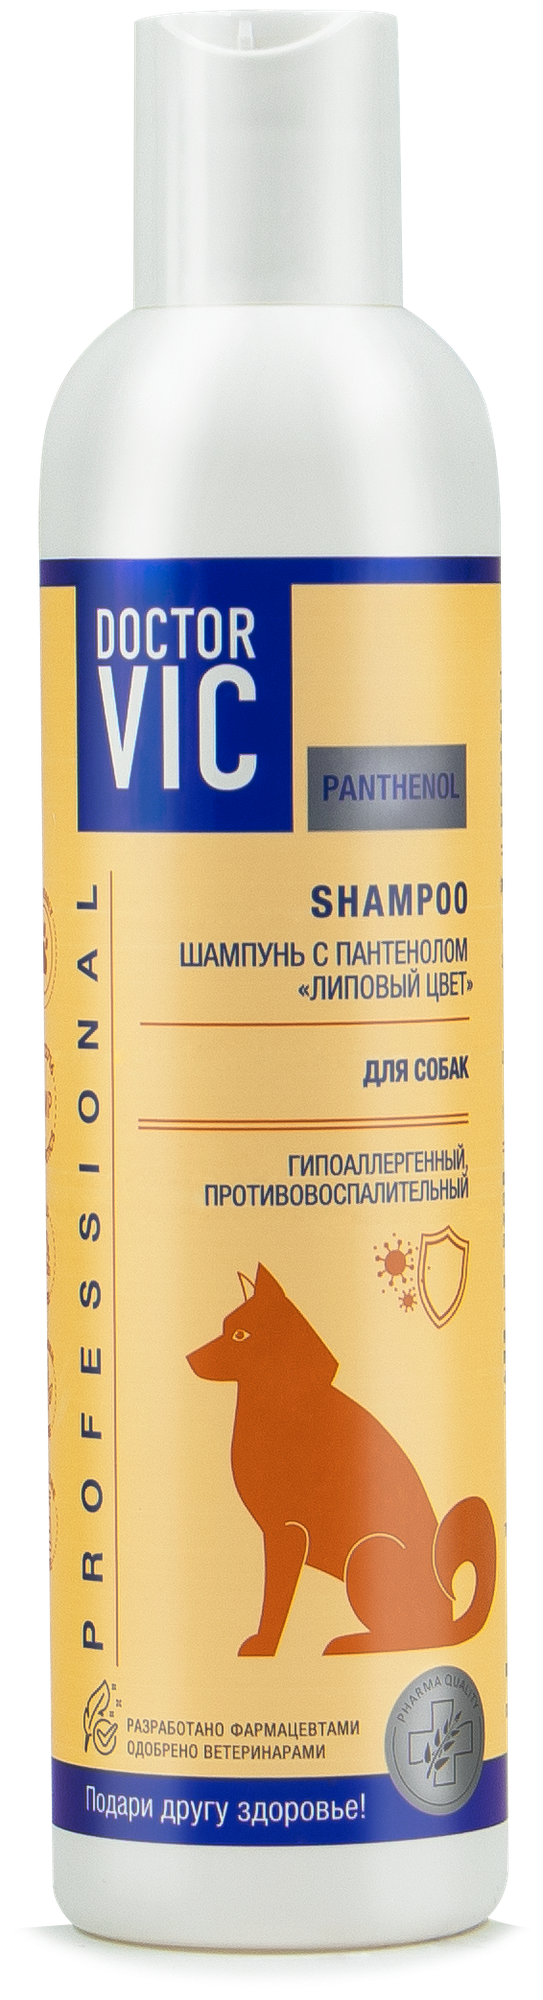 Doctor VIC Шампунь для собак с пантенолом противовоспалительный гипоаллергенный "Липовый цвет" 250 мл